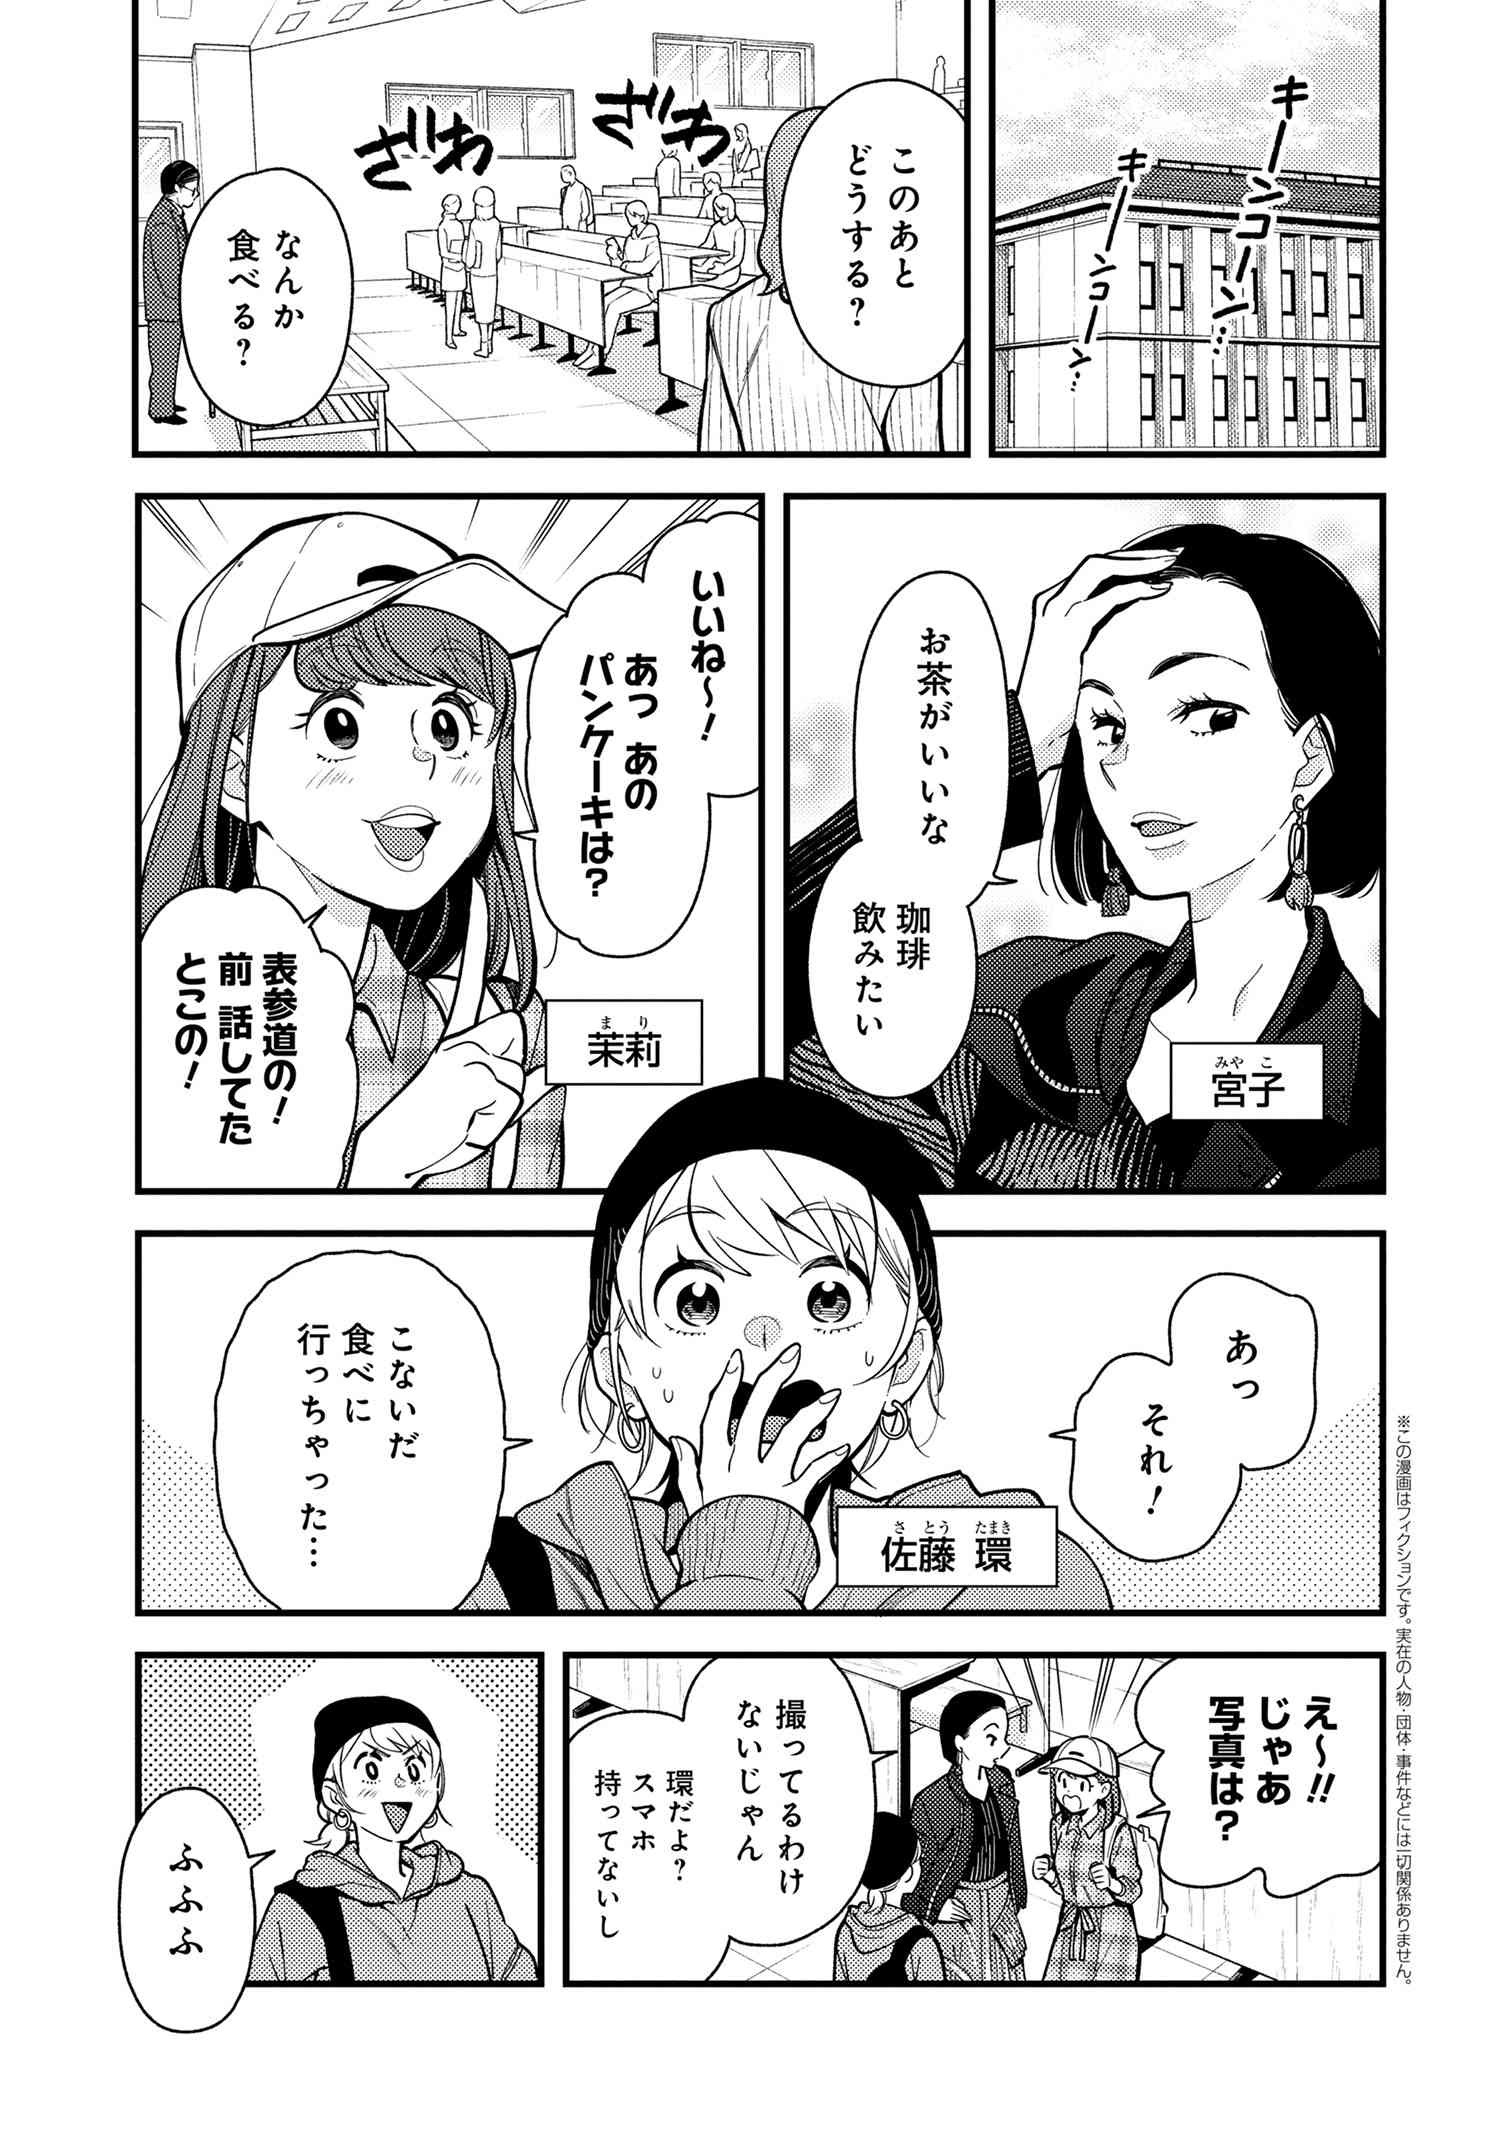 Fuku wo Kiru Nara Konna Fuu ni for Ladies' - Chapter 2 - Page 1